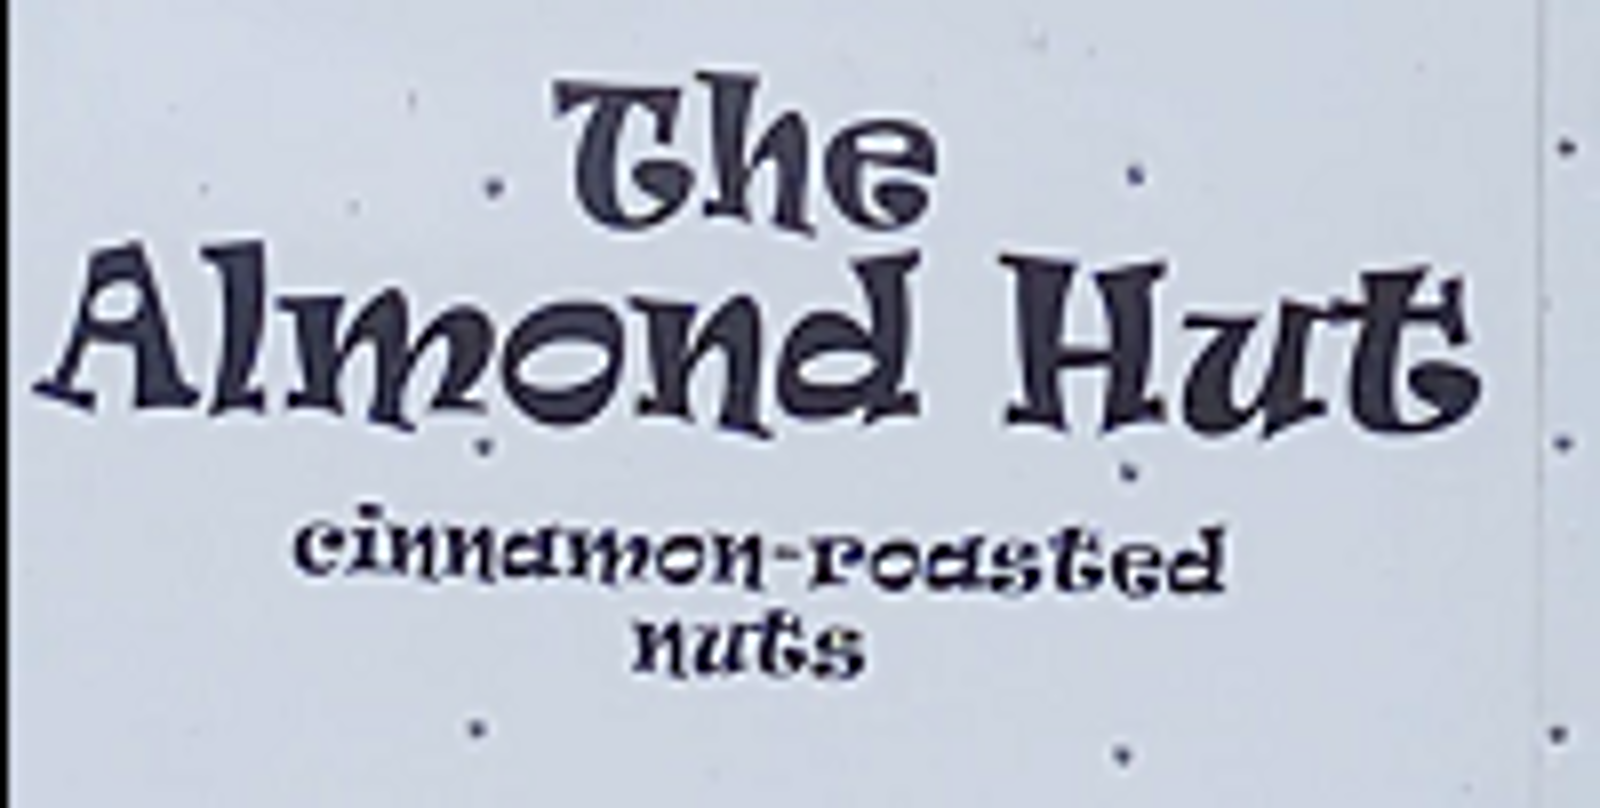 The Almond Hut